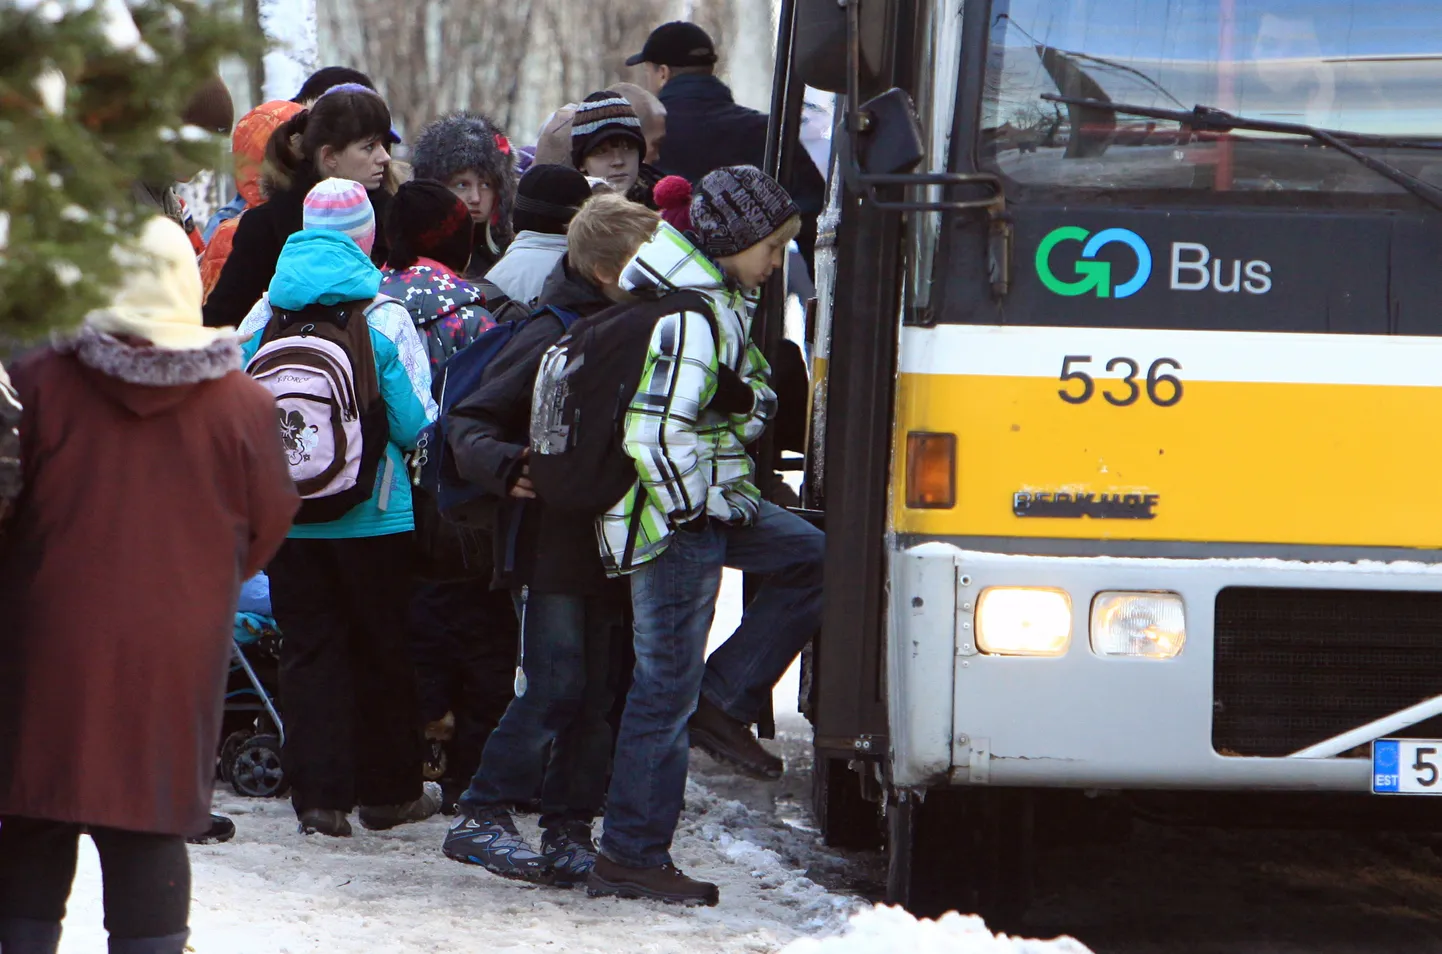 Keskerakonna esitatud eelnõu lastele tasuta bussisõidu võimaldamiseks ei läinud Pärnu linnavolikogus läbi.